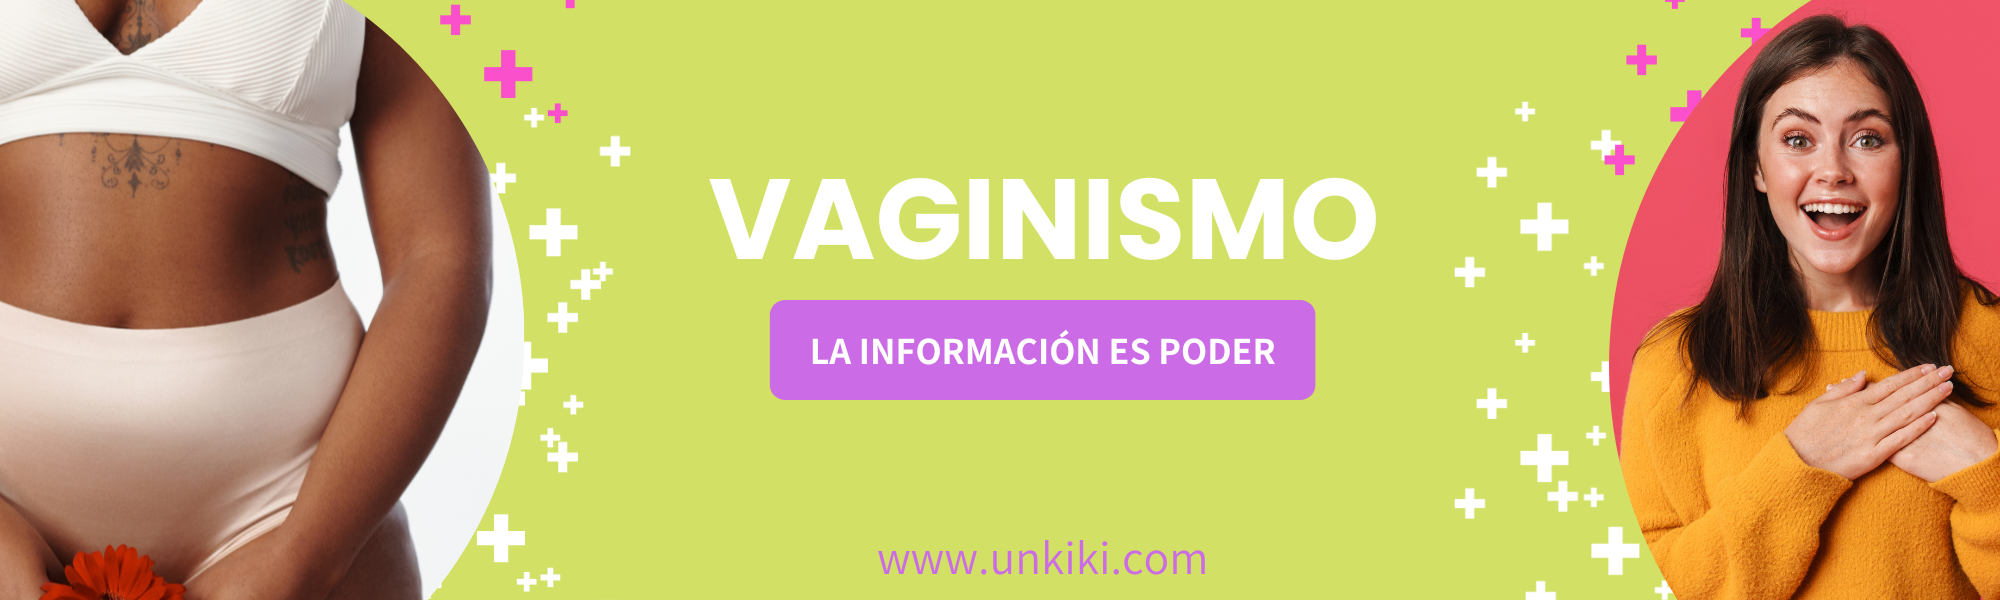 Vaginismo la información es poder, unkiki.com